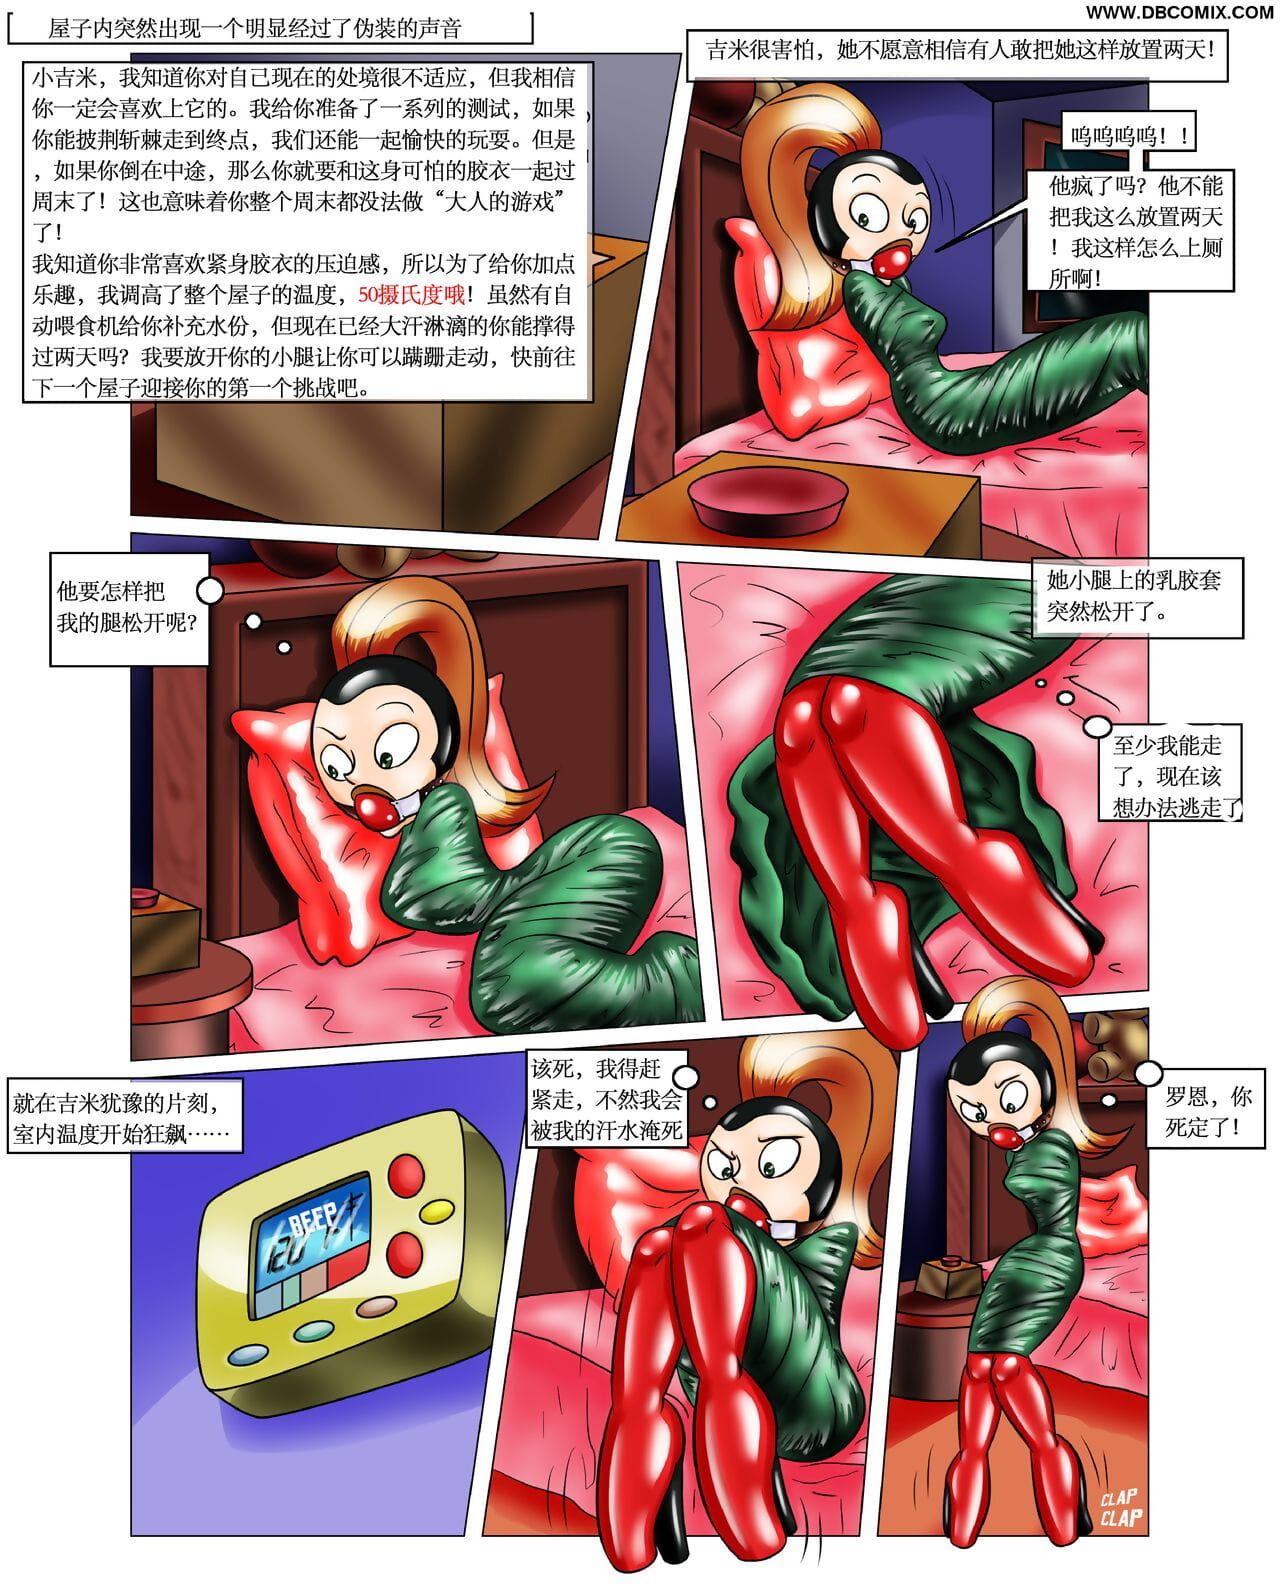 impossivelmente obsceno rons Presente 【大头翻译】 page 1